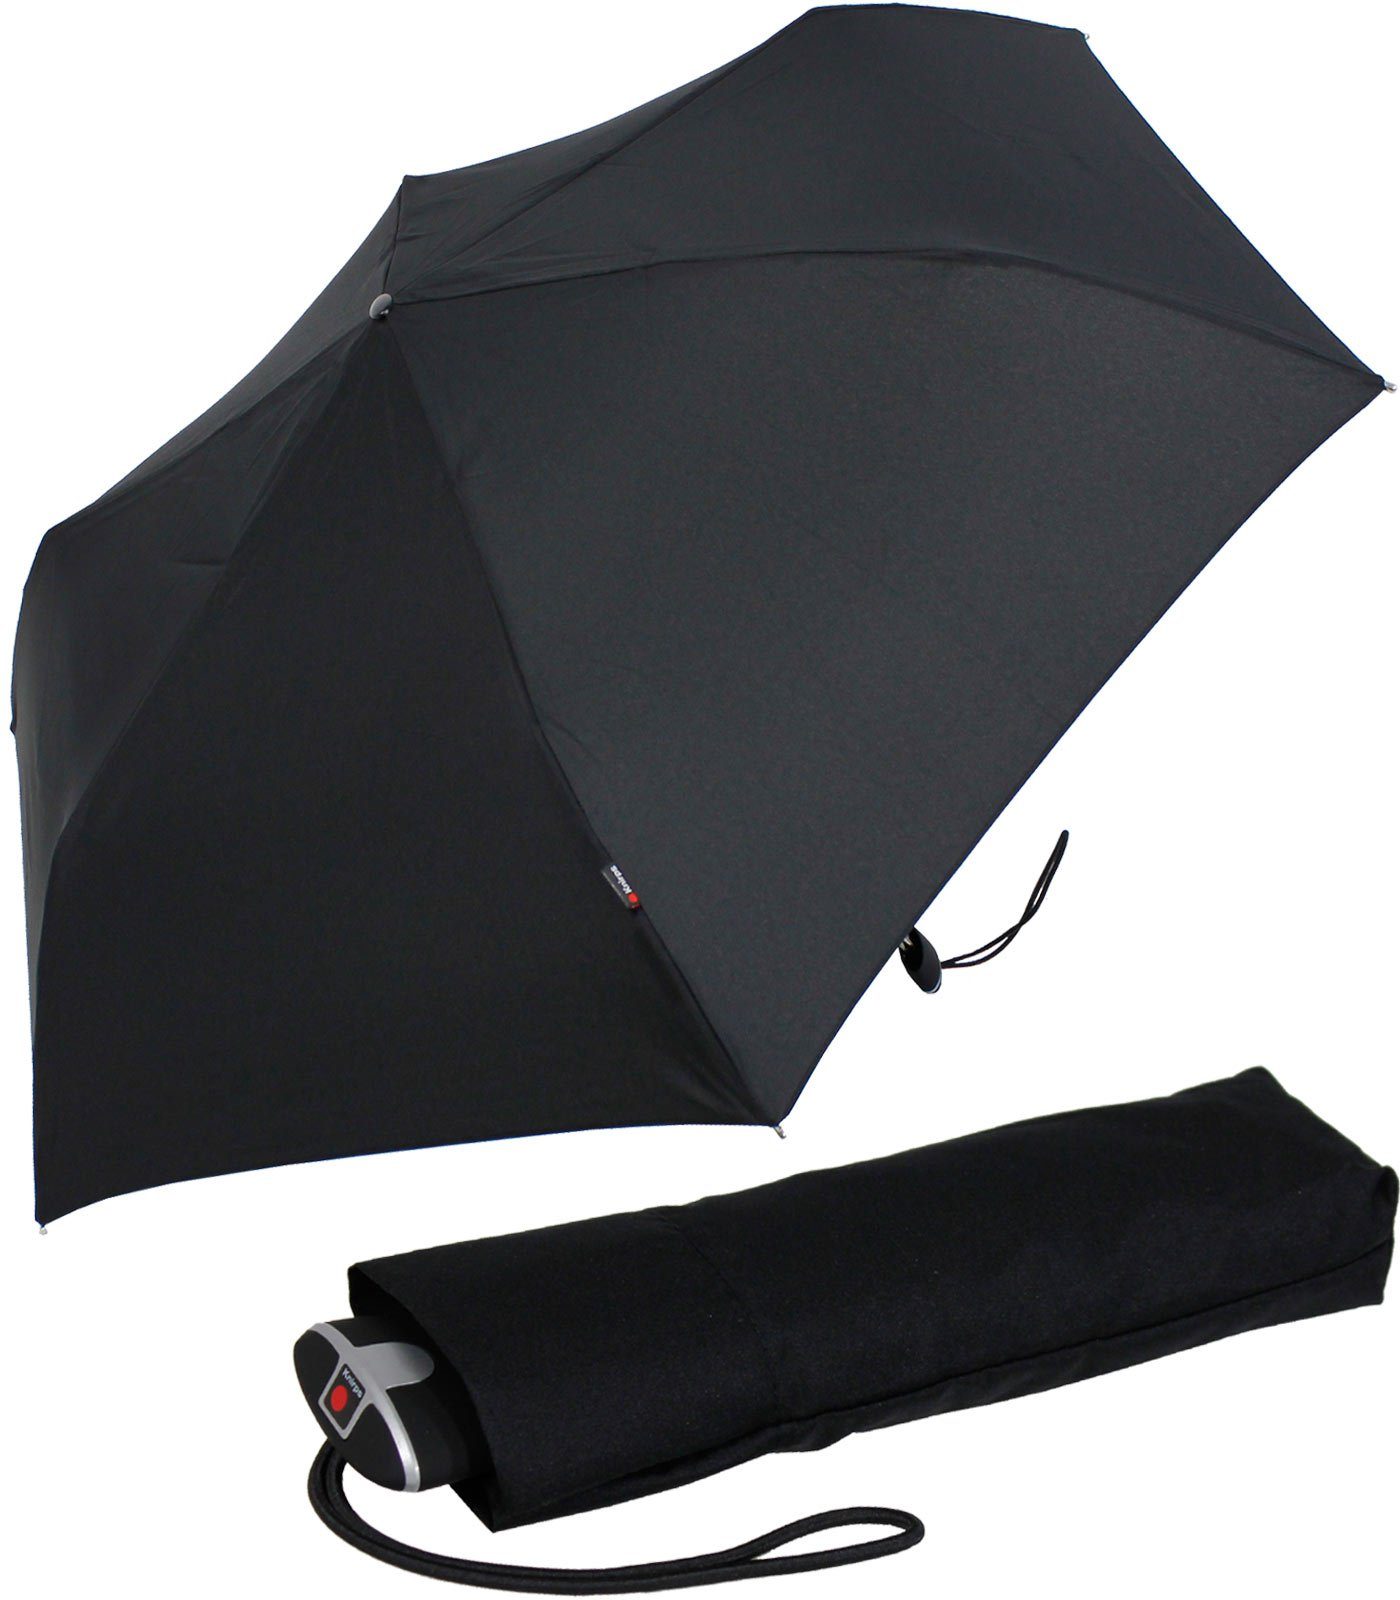 Knirps® Taschenregenschirm flacher, stabiler Schirm, passend für jede Tasche, ein treuer Begleiter, für jeden Notfall schwarz